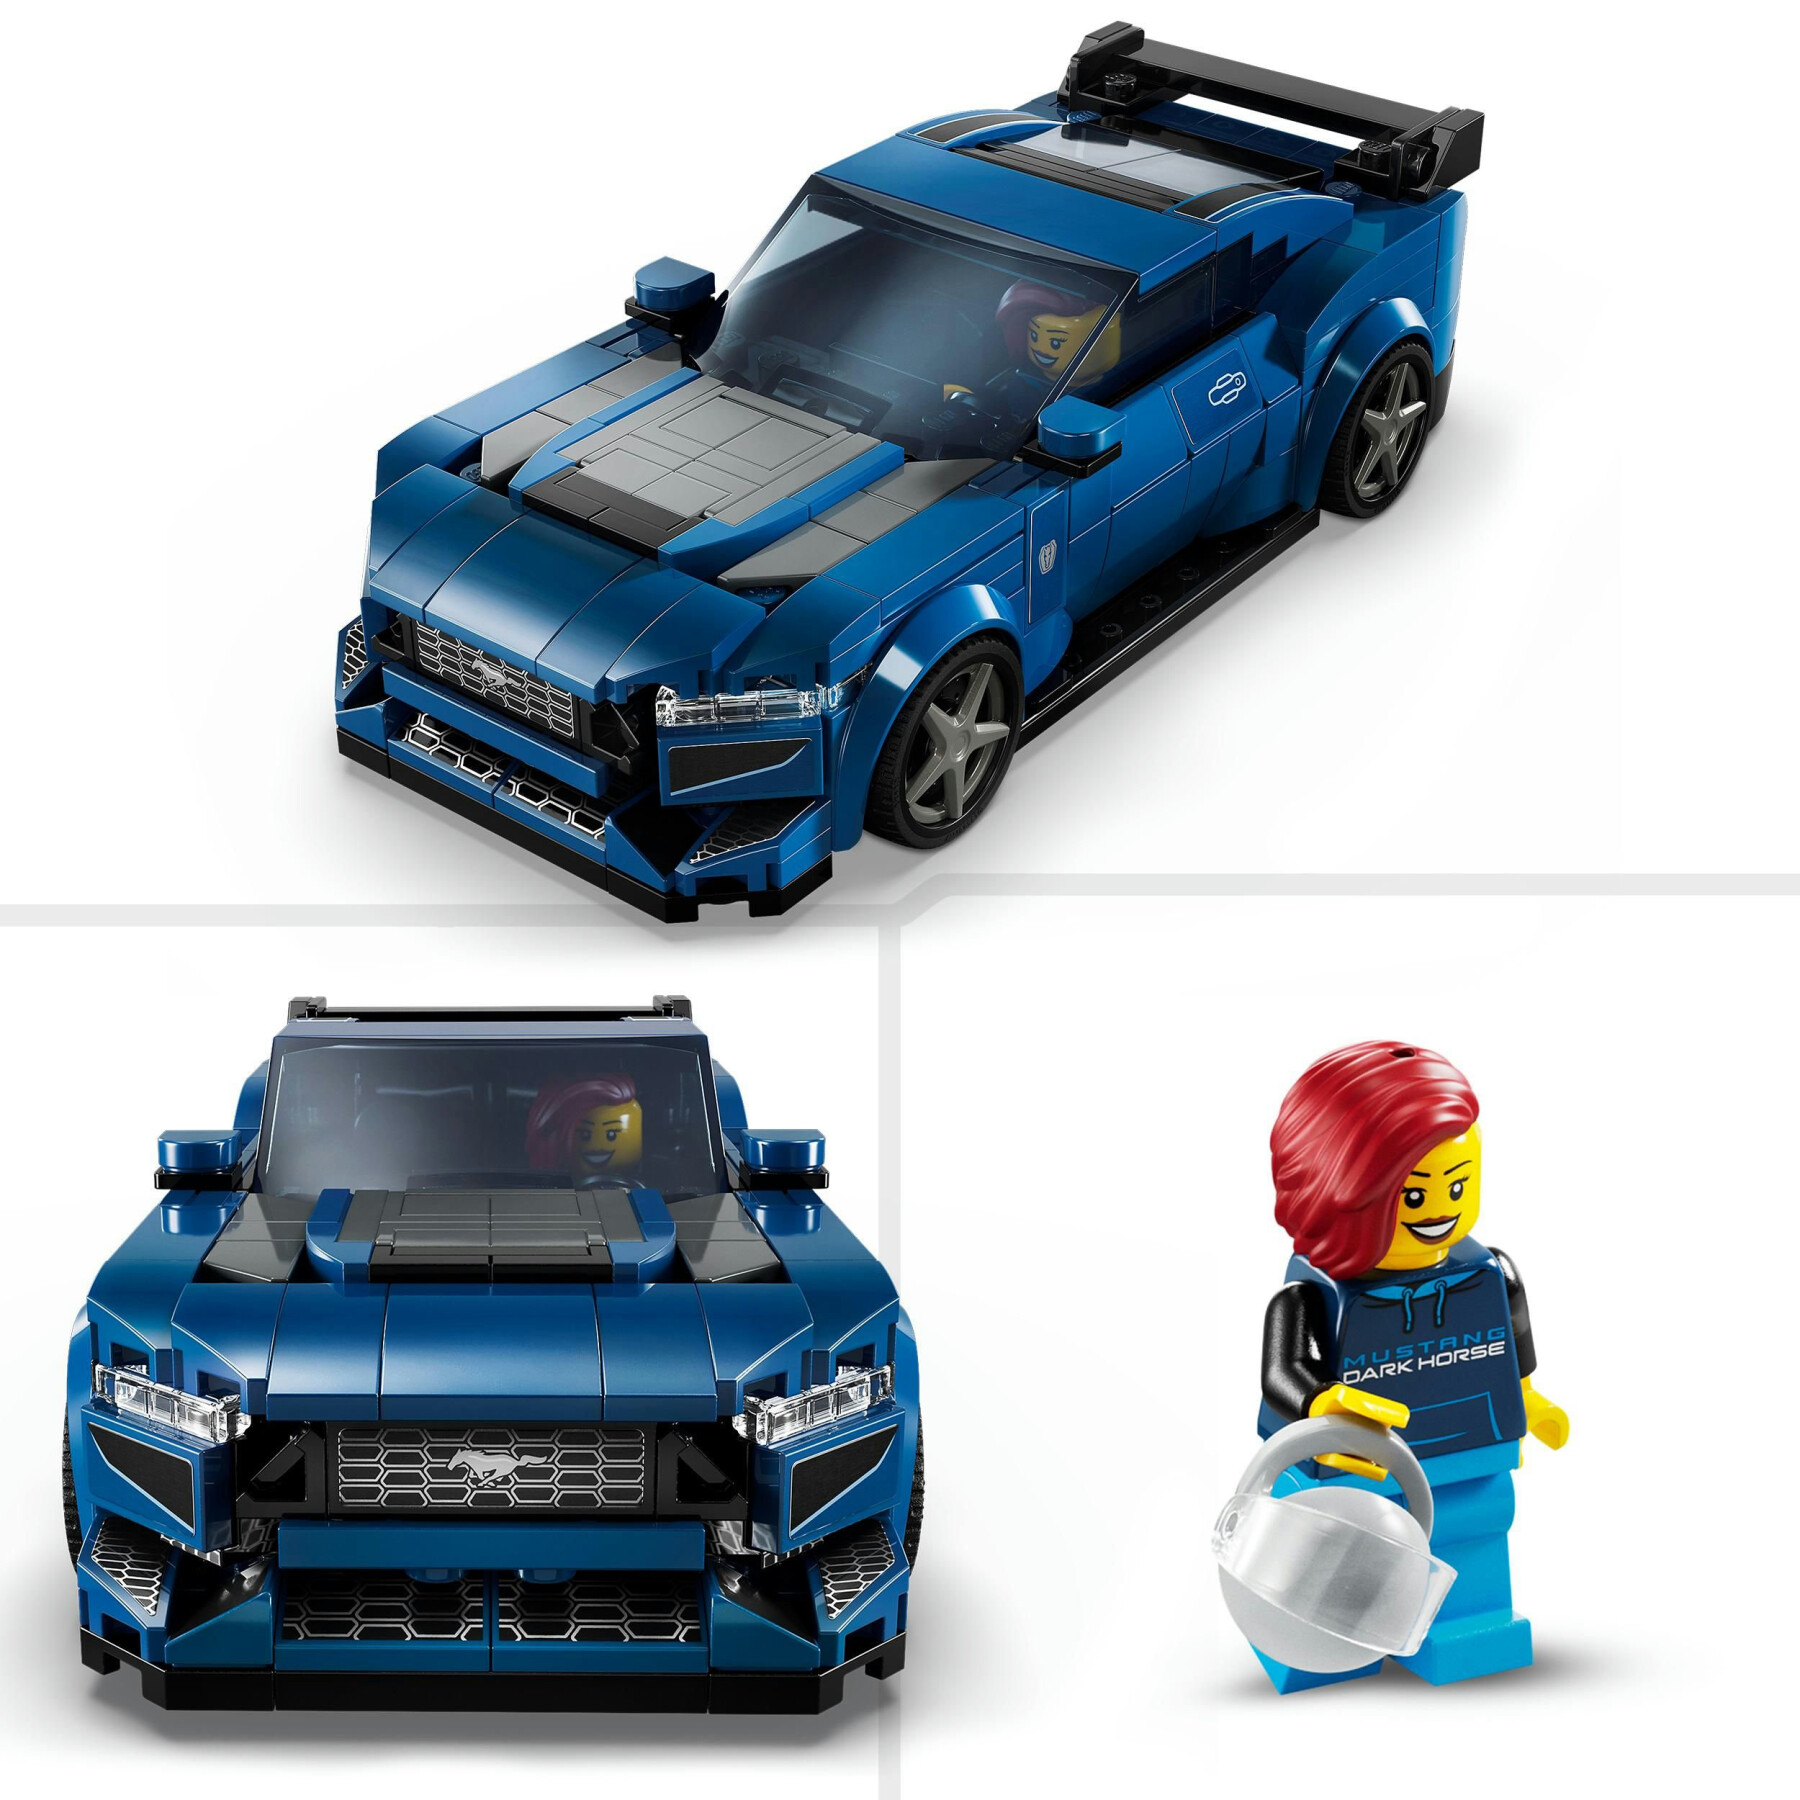 Lego speed champions 76920 auto sportiva ford mustang dark horse, modellino di macchina giocattolo da costruire per bambini 9+ - LEGO SPEED CHAMPIONS